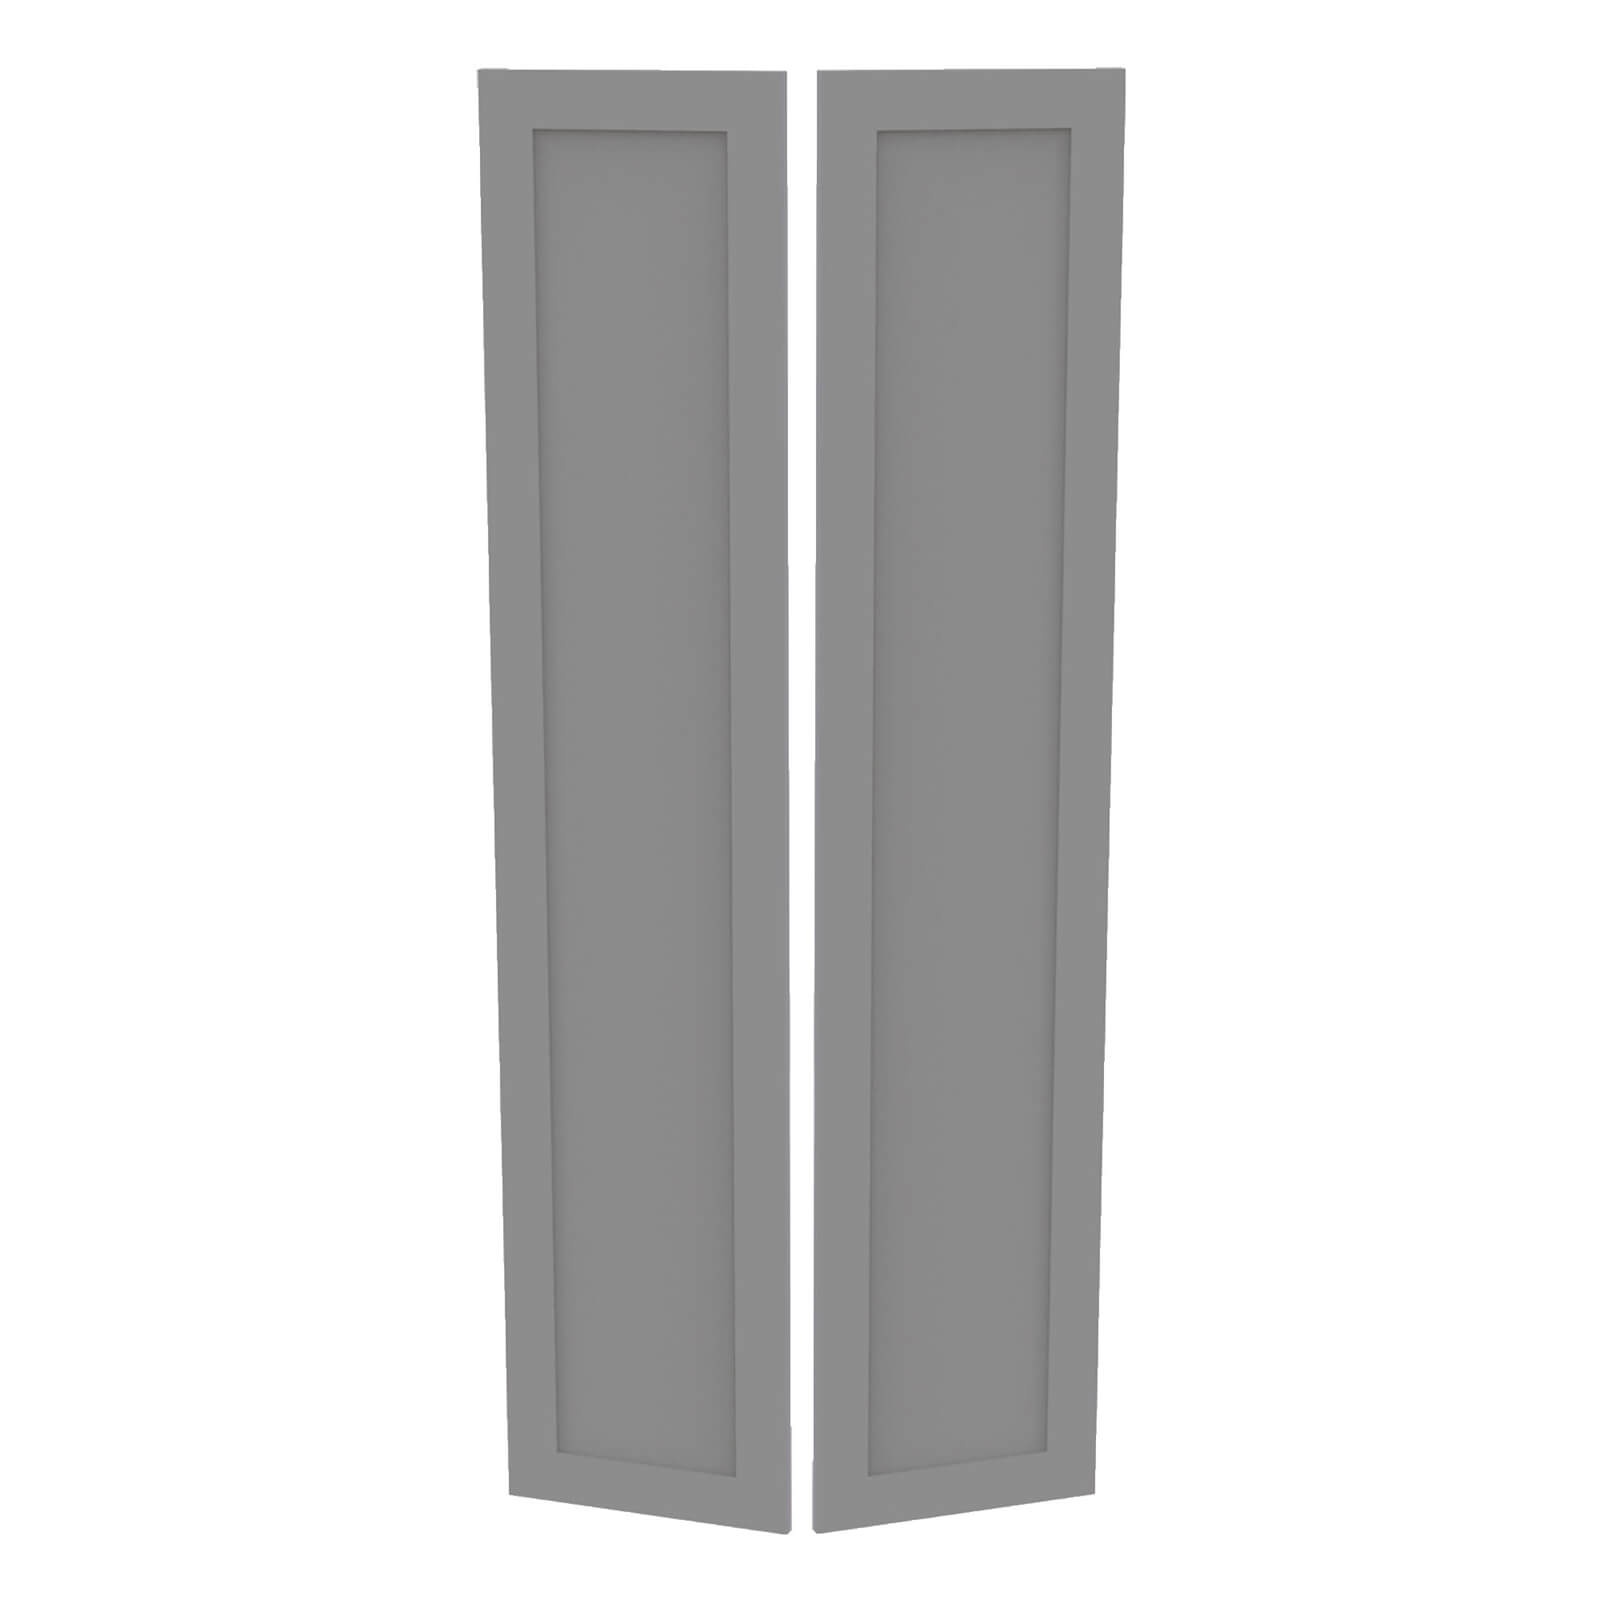 Fitted Bedroom Shaker Double Wardrobe Doors - Grey